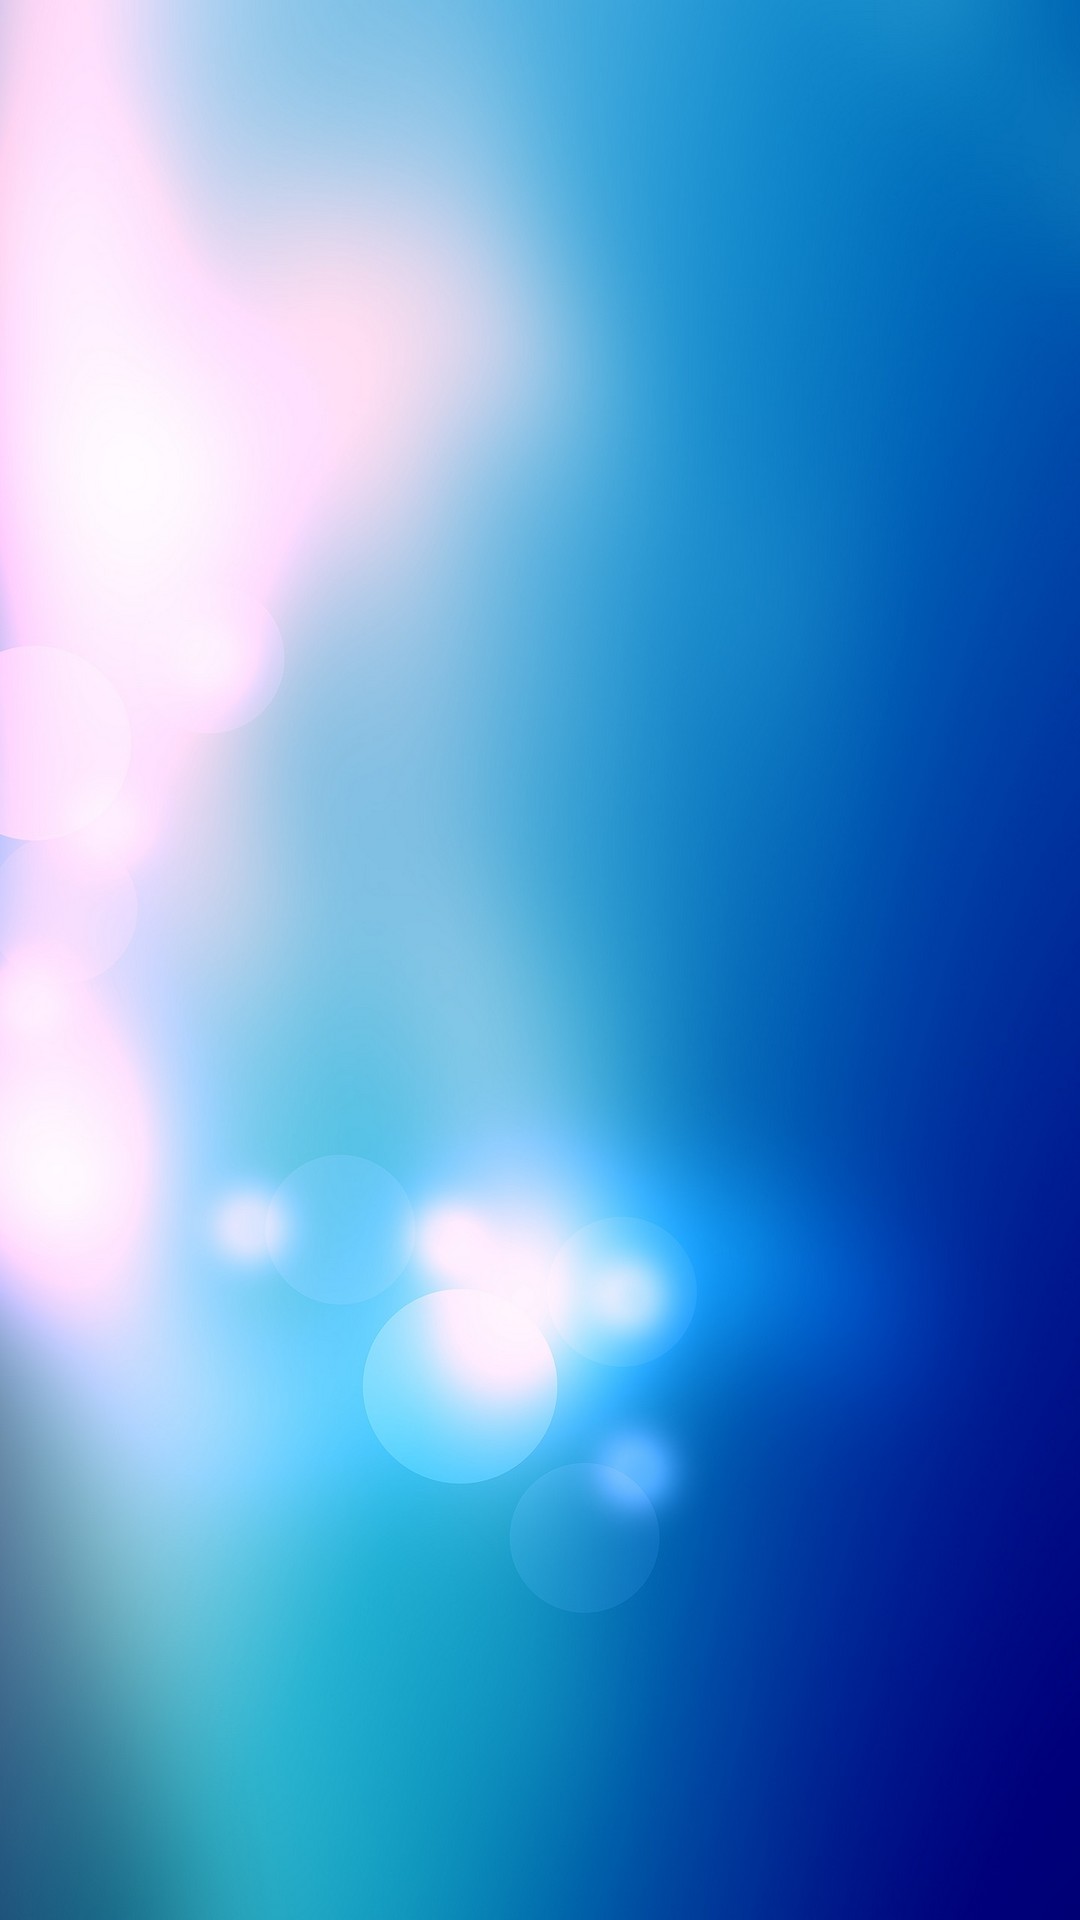 Light Blue iPhone Wallpaper resolution 1080x1920